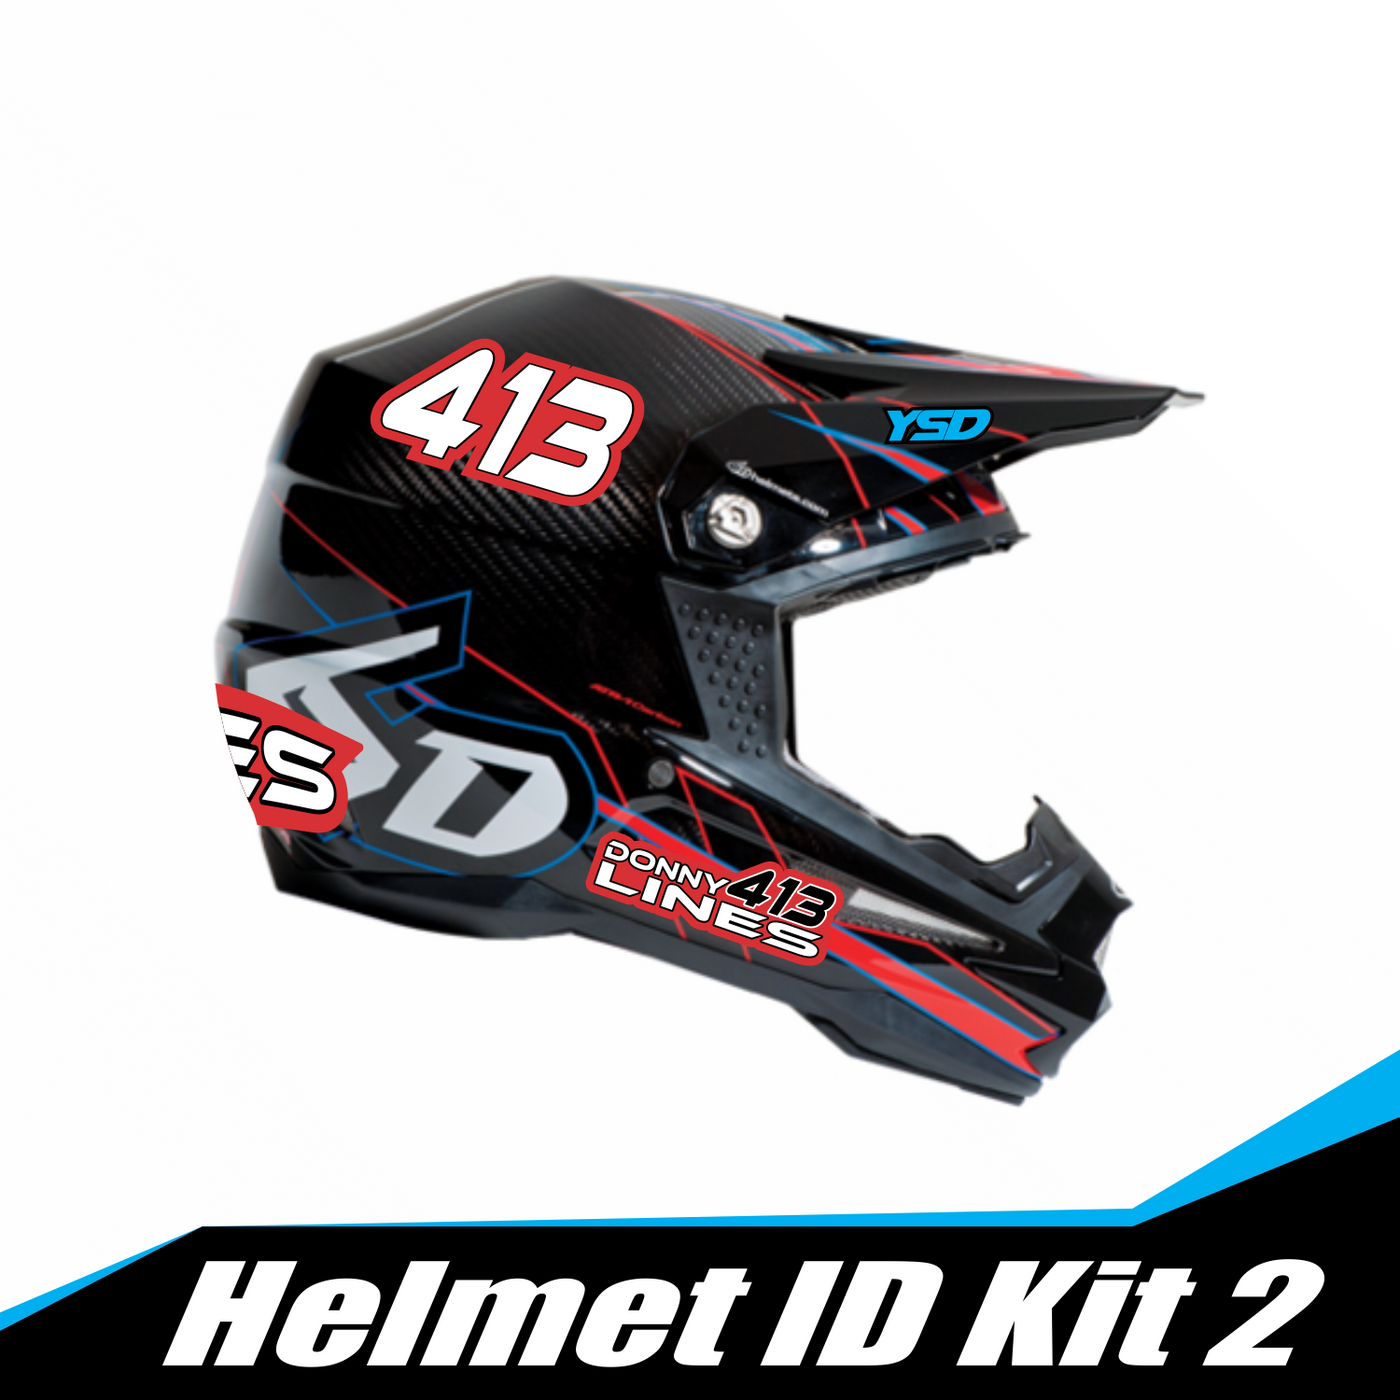 Helmet ID kit 2 - Y&S Designs, LLC